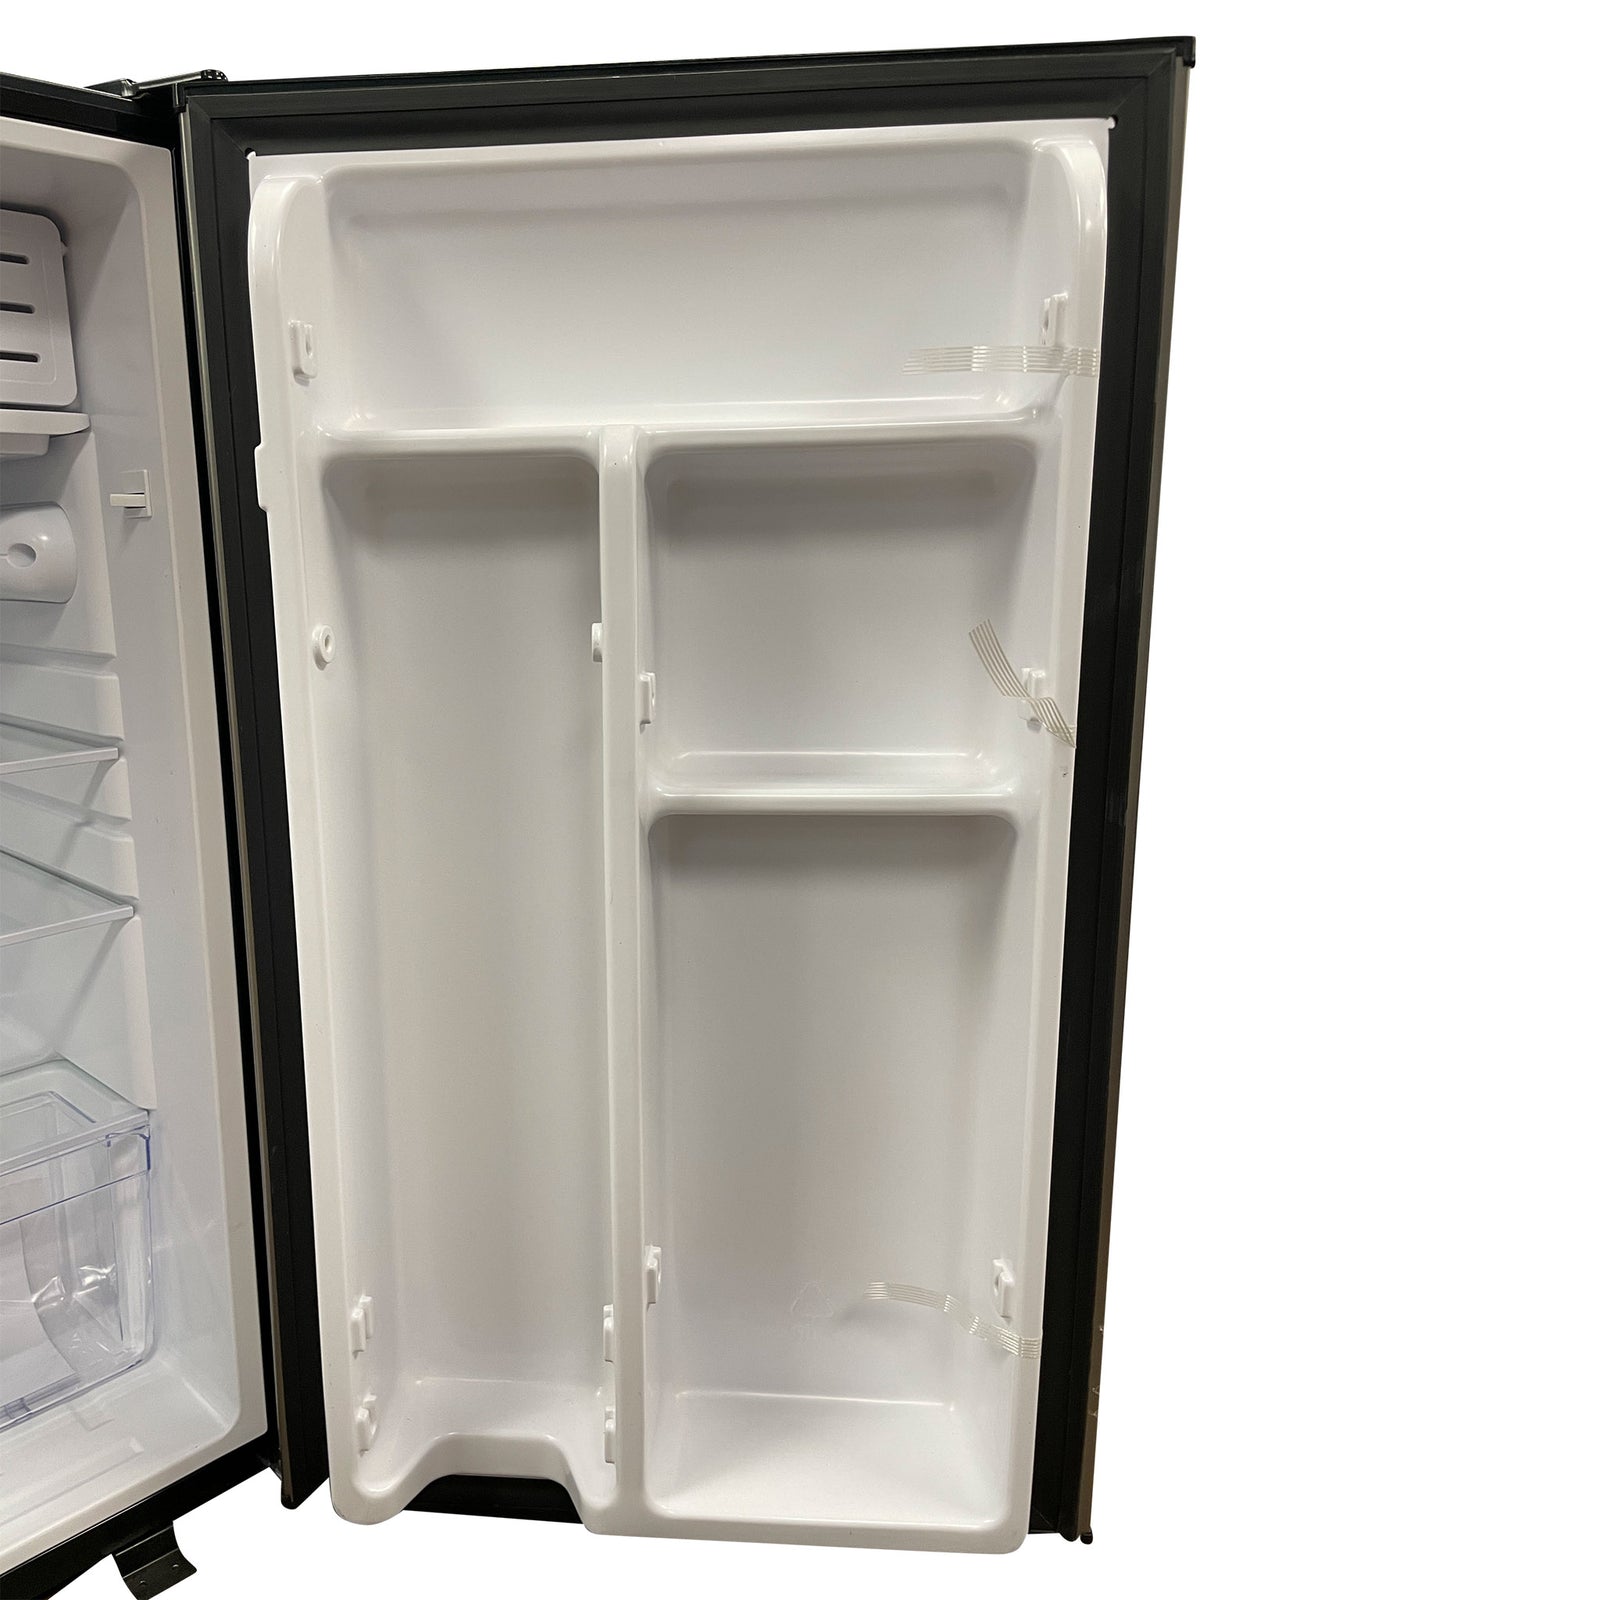 12 volt refrigerator